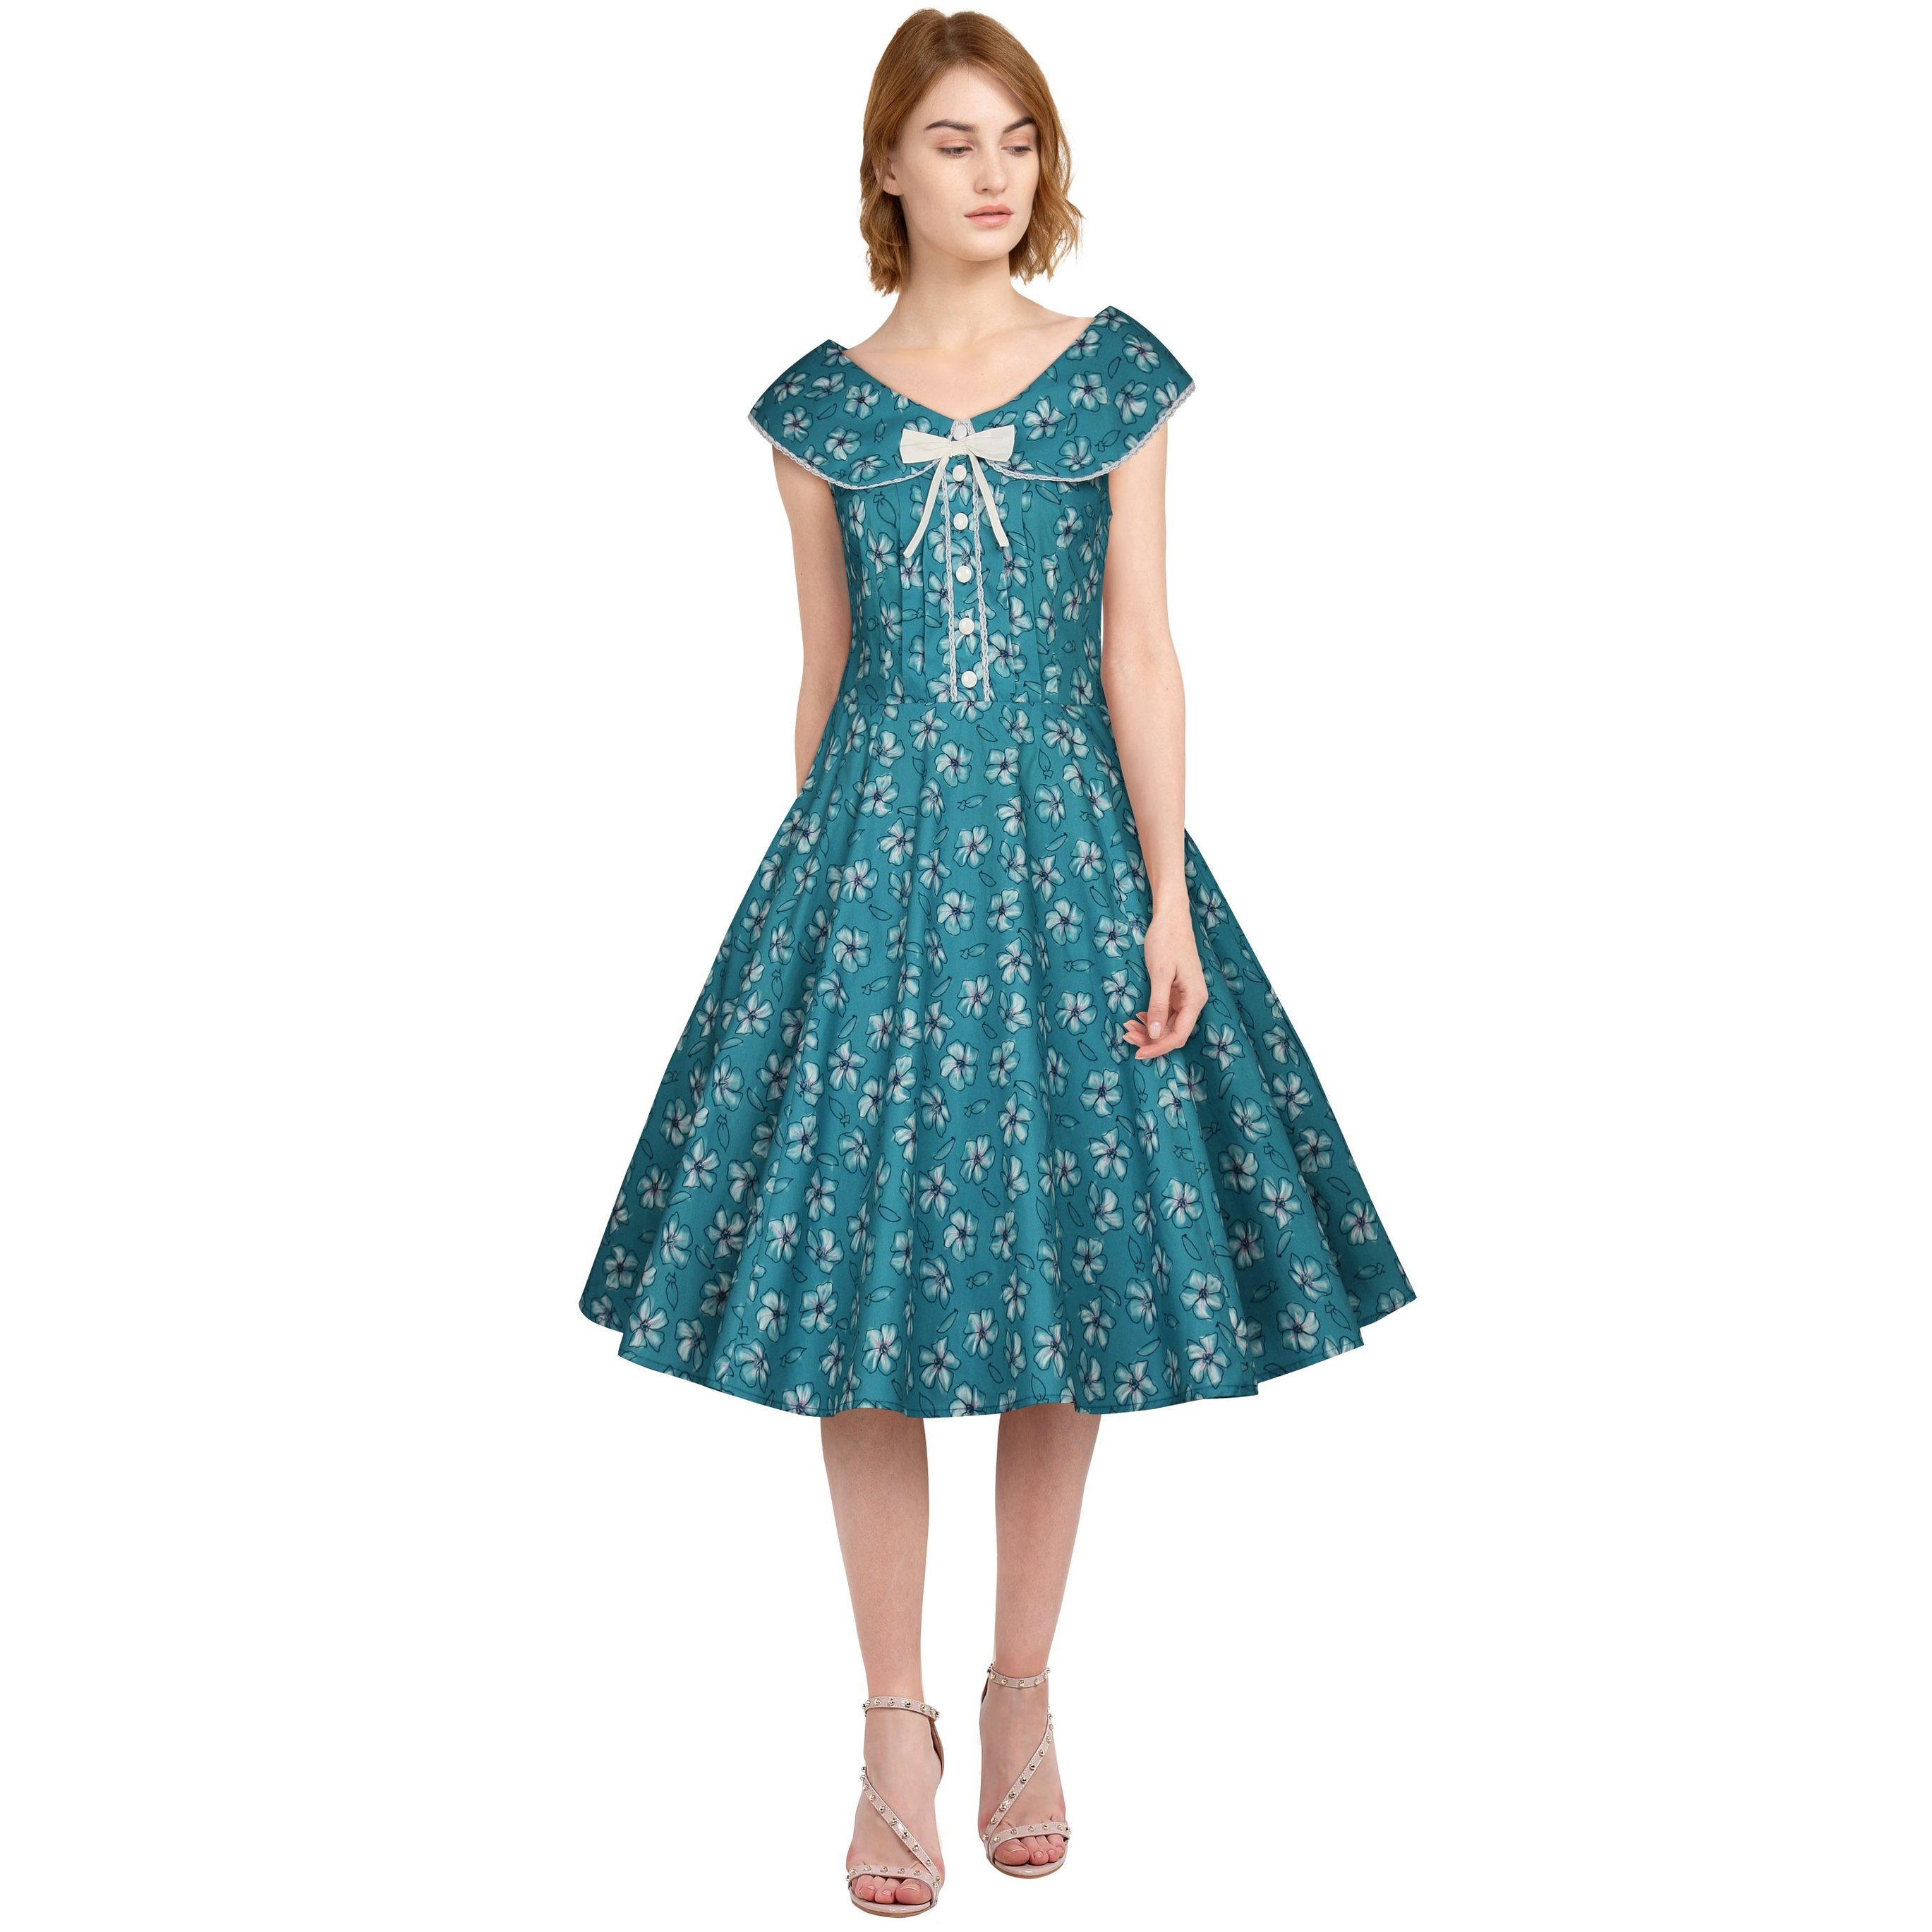 Chic Star Petticoat-Kleid Vintage Kleid zum Petticoat in türkis Blumemuster